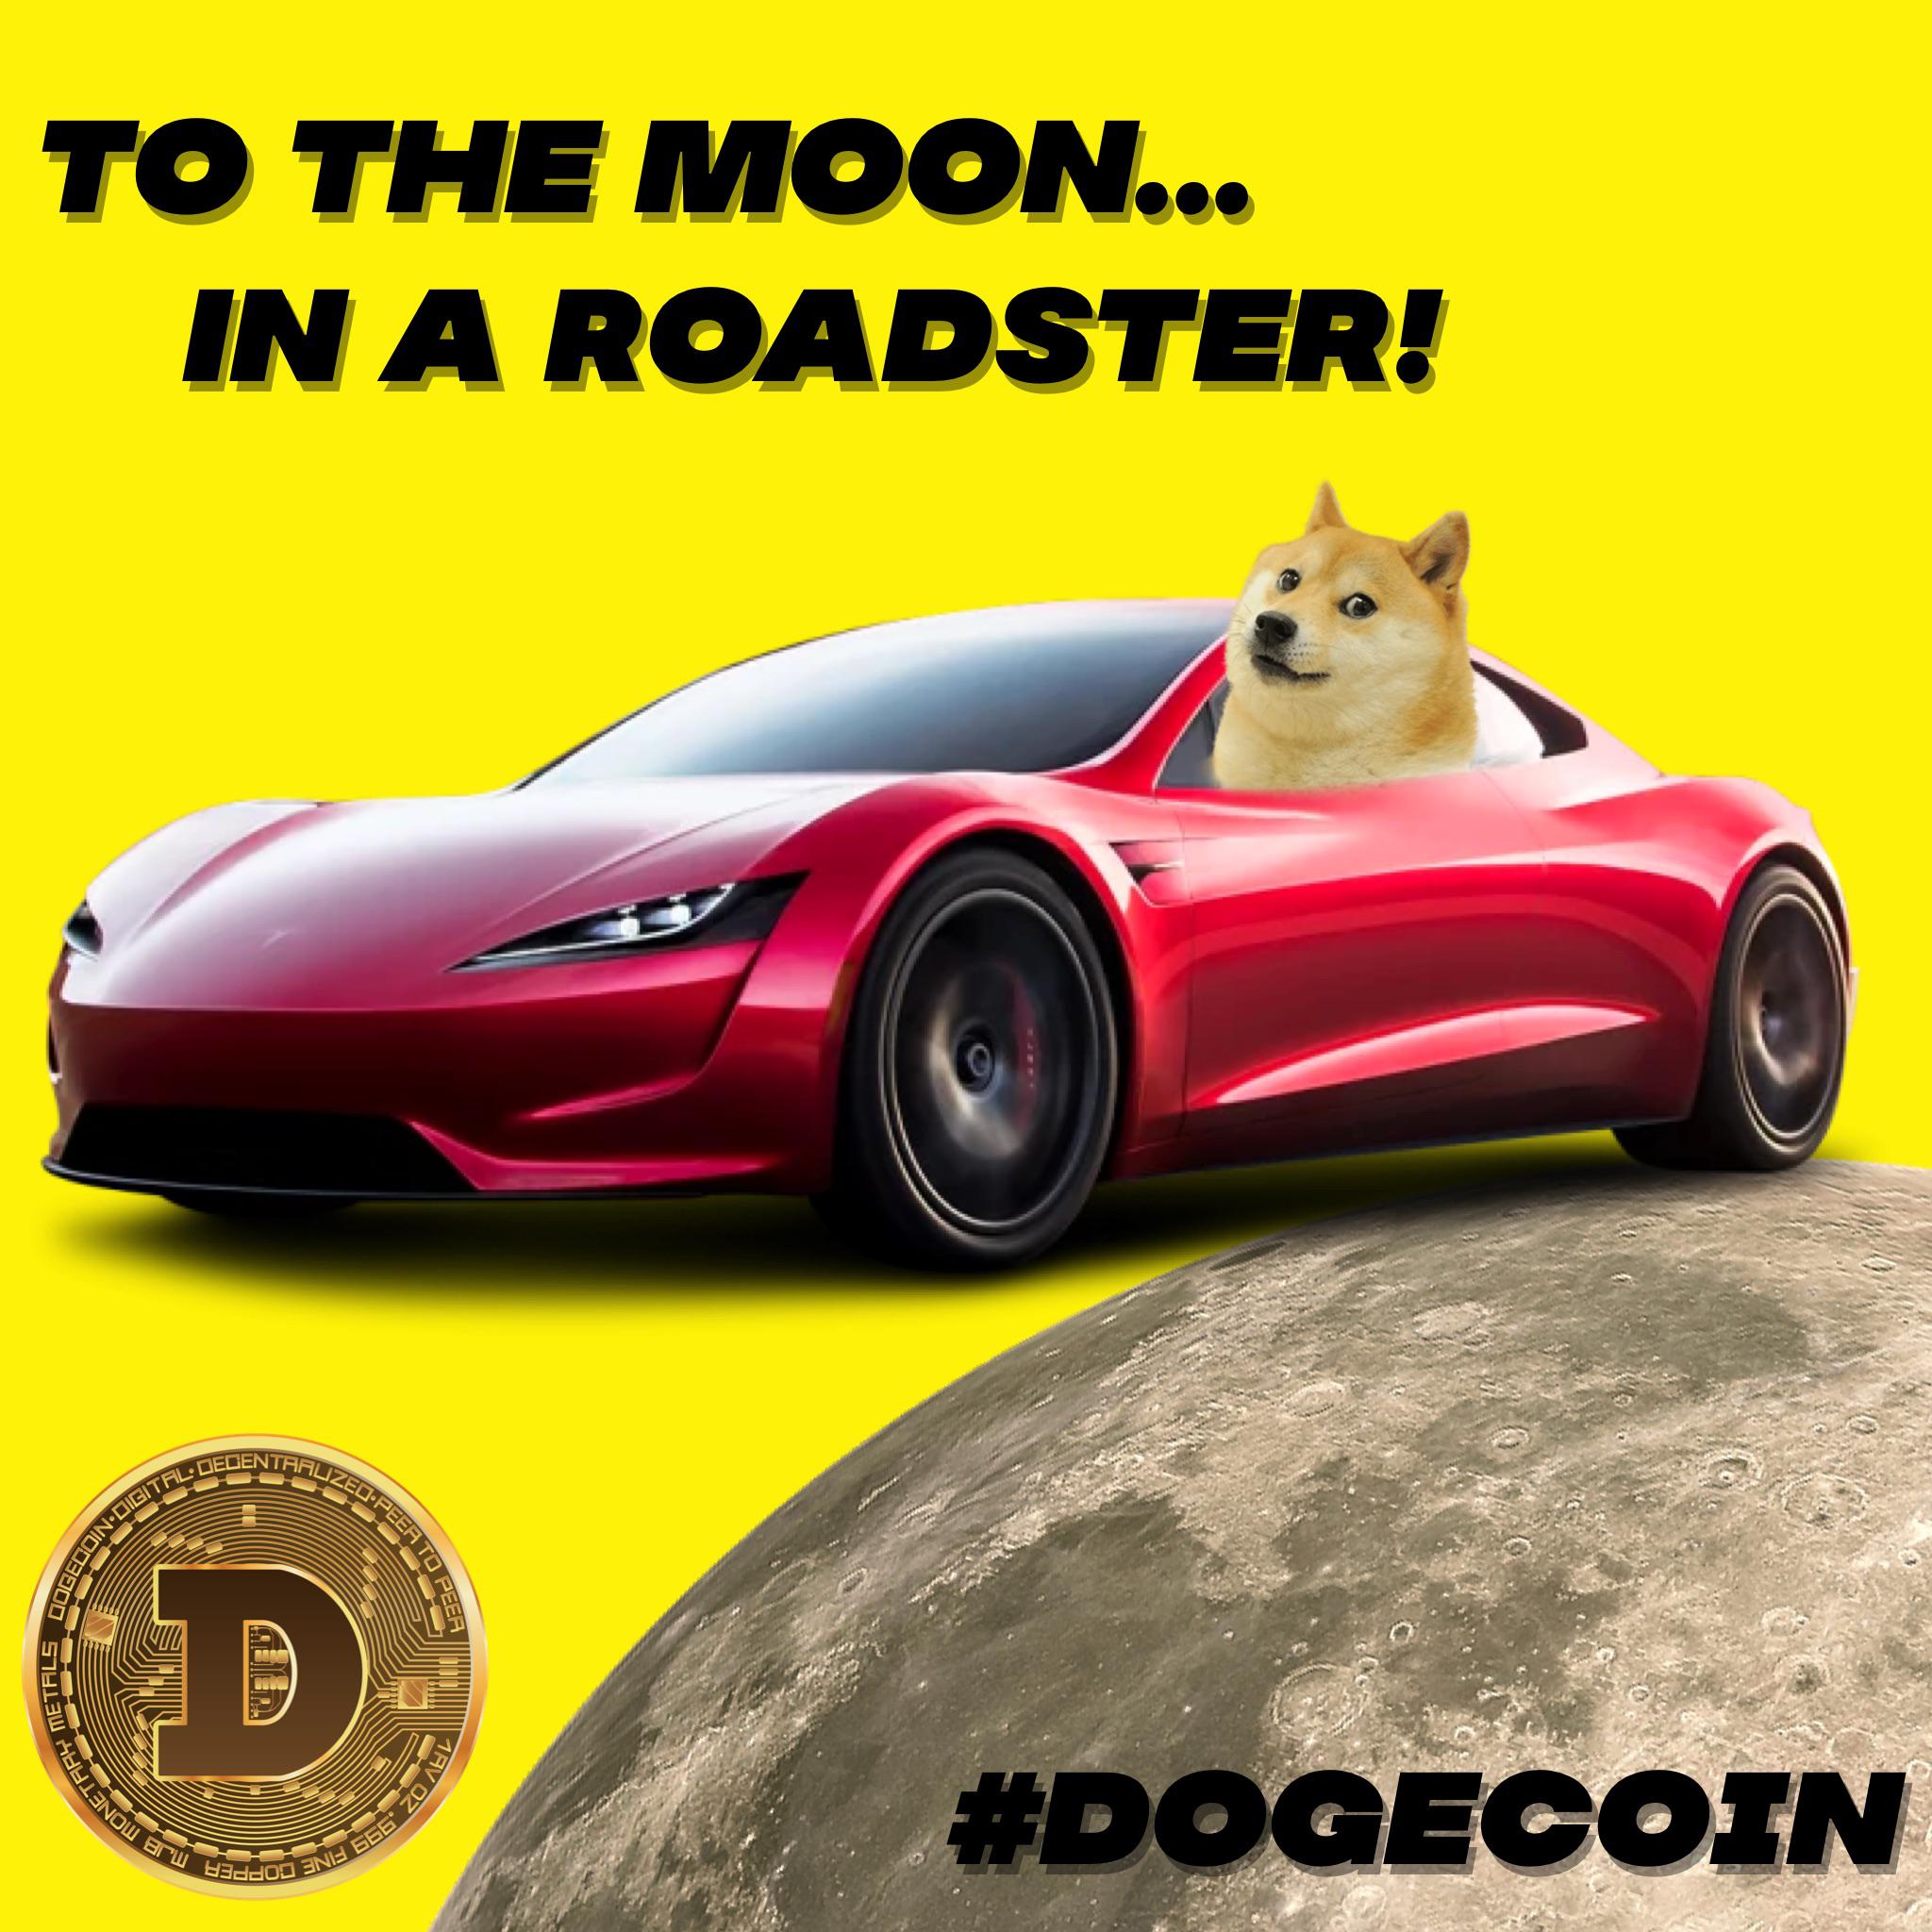 DogeCar Image